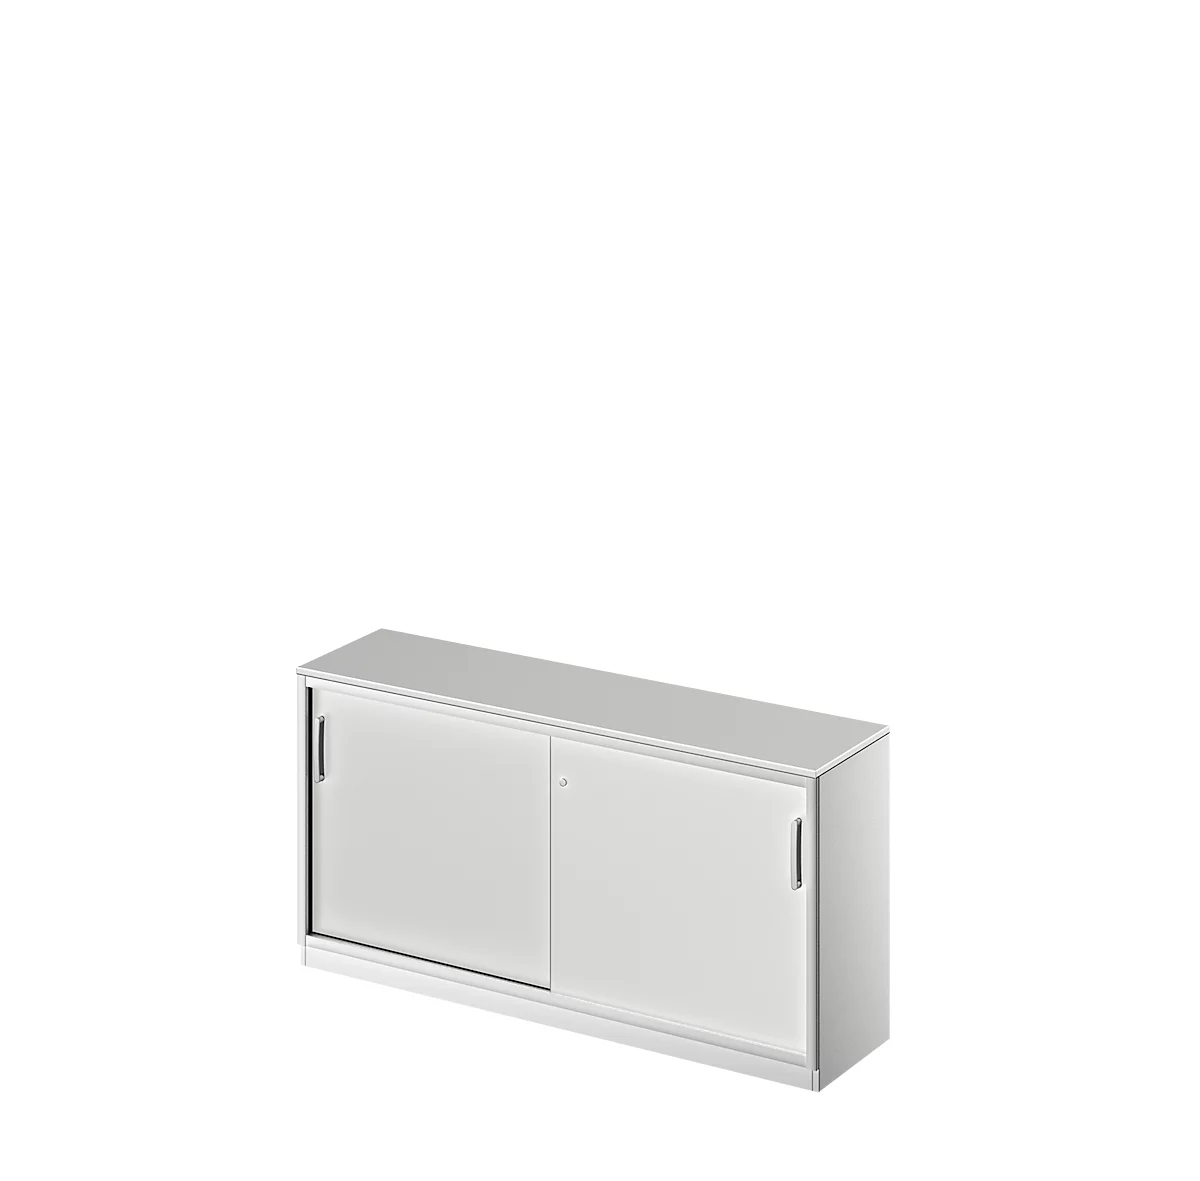 Schäfer Shop Genius Armario de puertas correderas TETRIS SOLID, 2 AA, An 1600 mm, con cubierta de 19 mm, gris luminoso/aluminio blanco